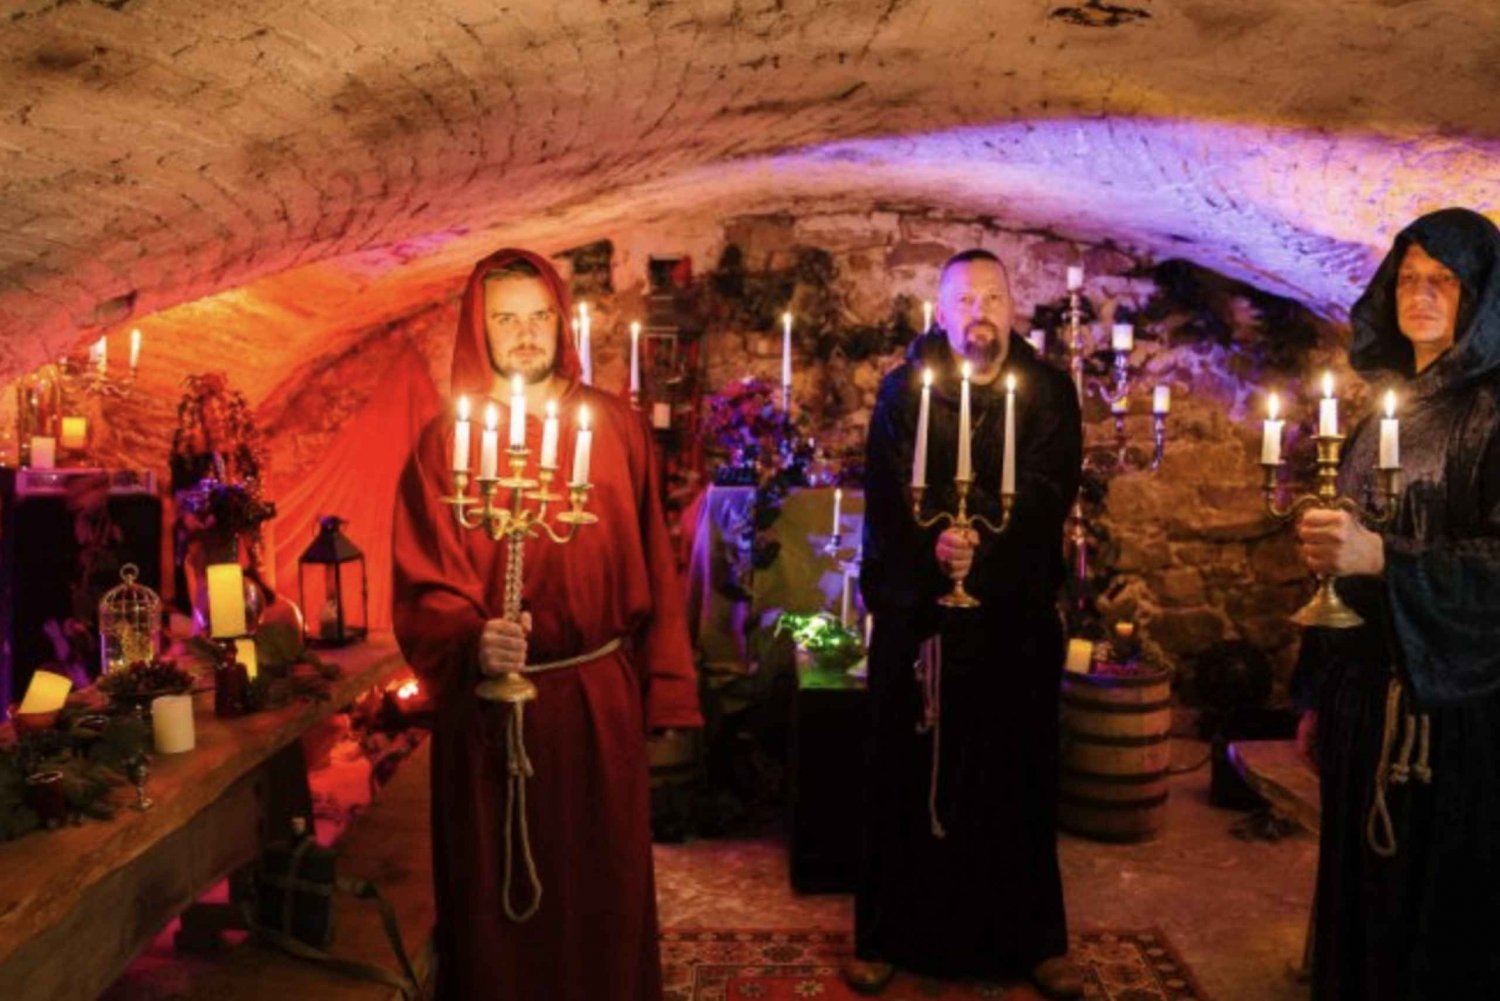 Cata de vinos letones y espectáculo de monjes